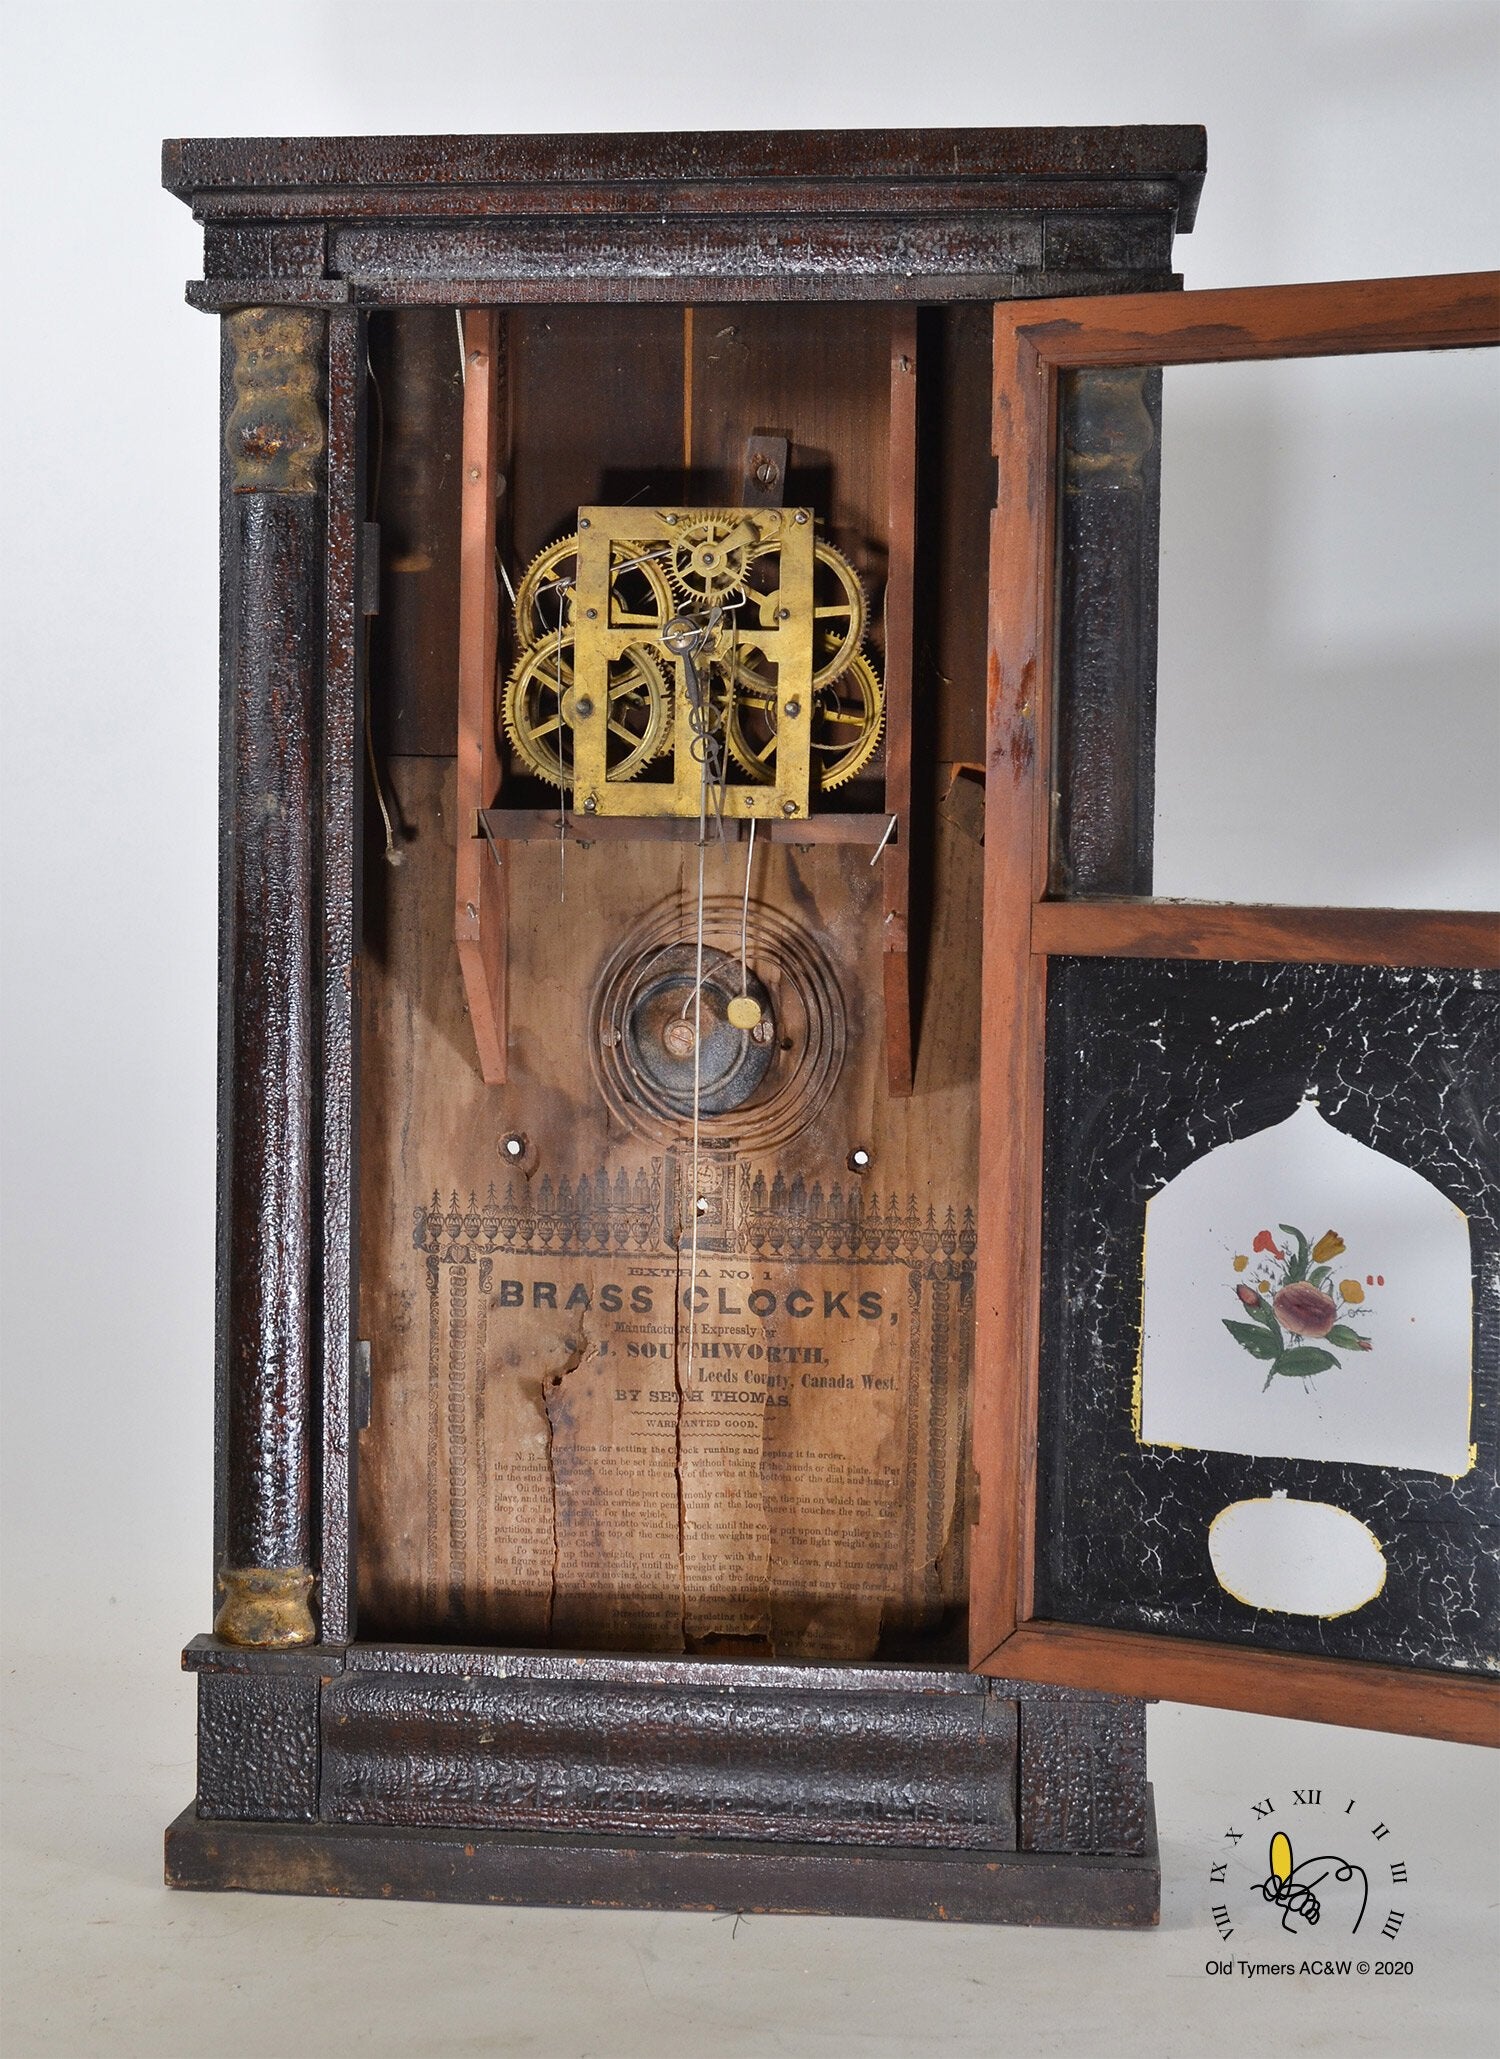 S.T. Southworth Mantel Clock